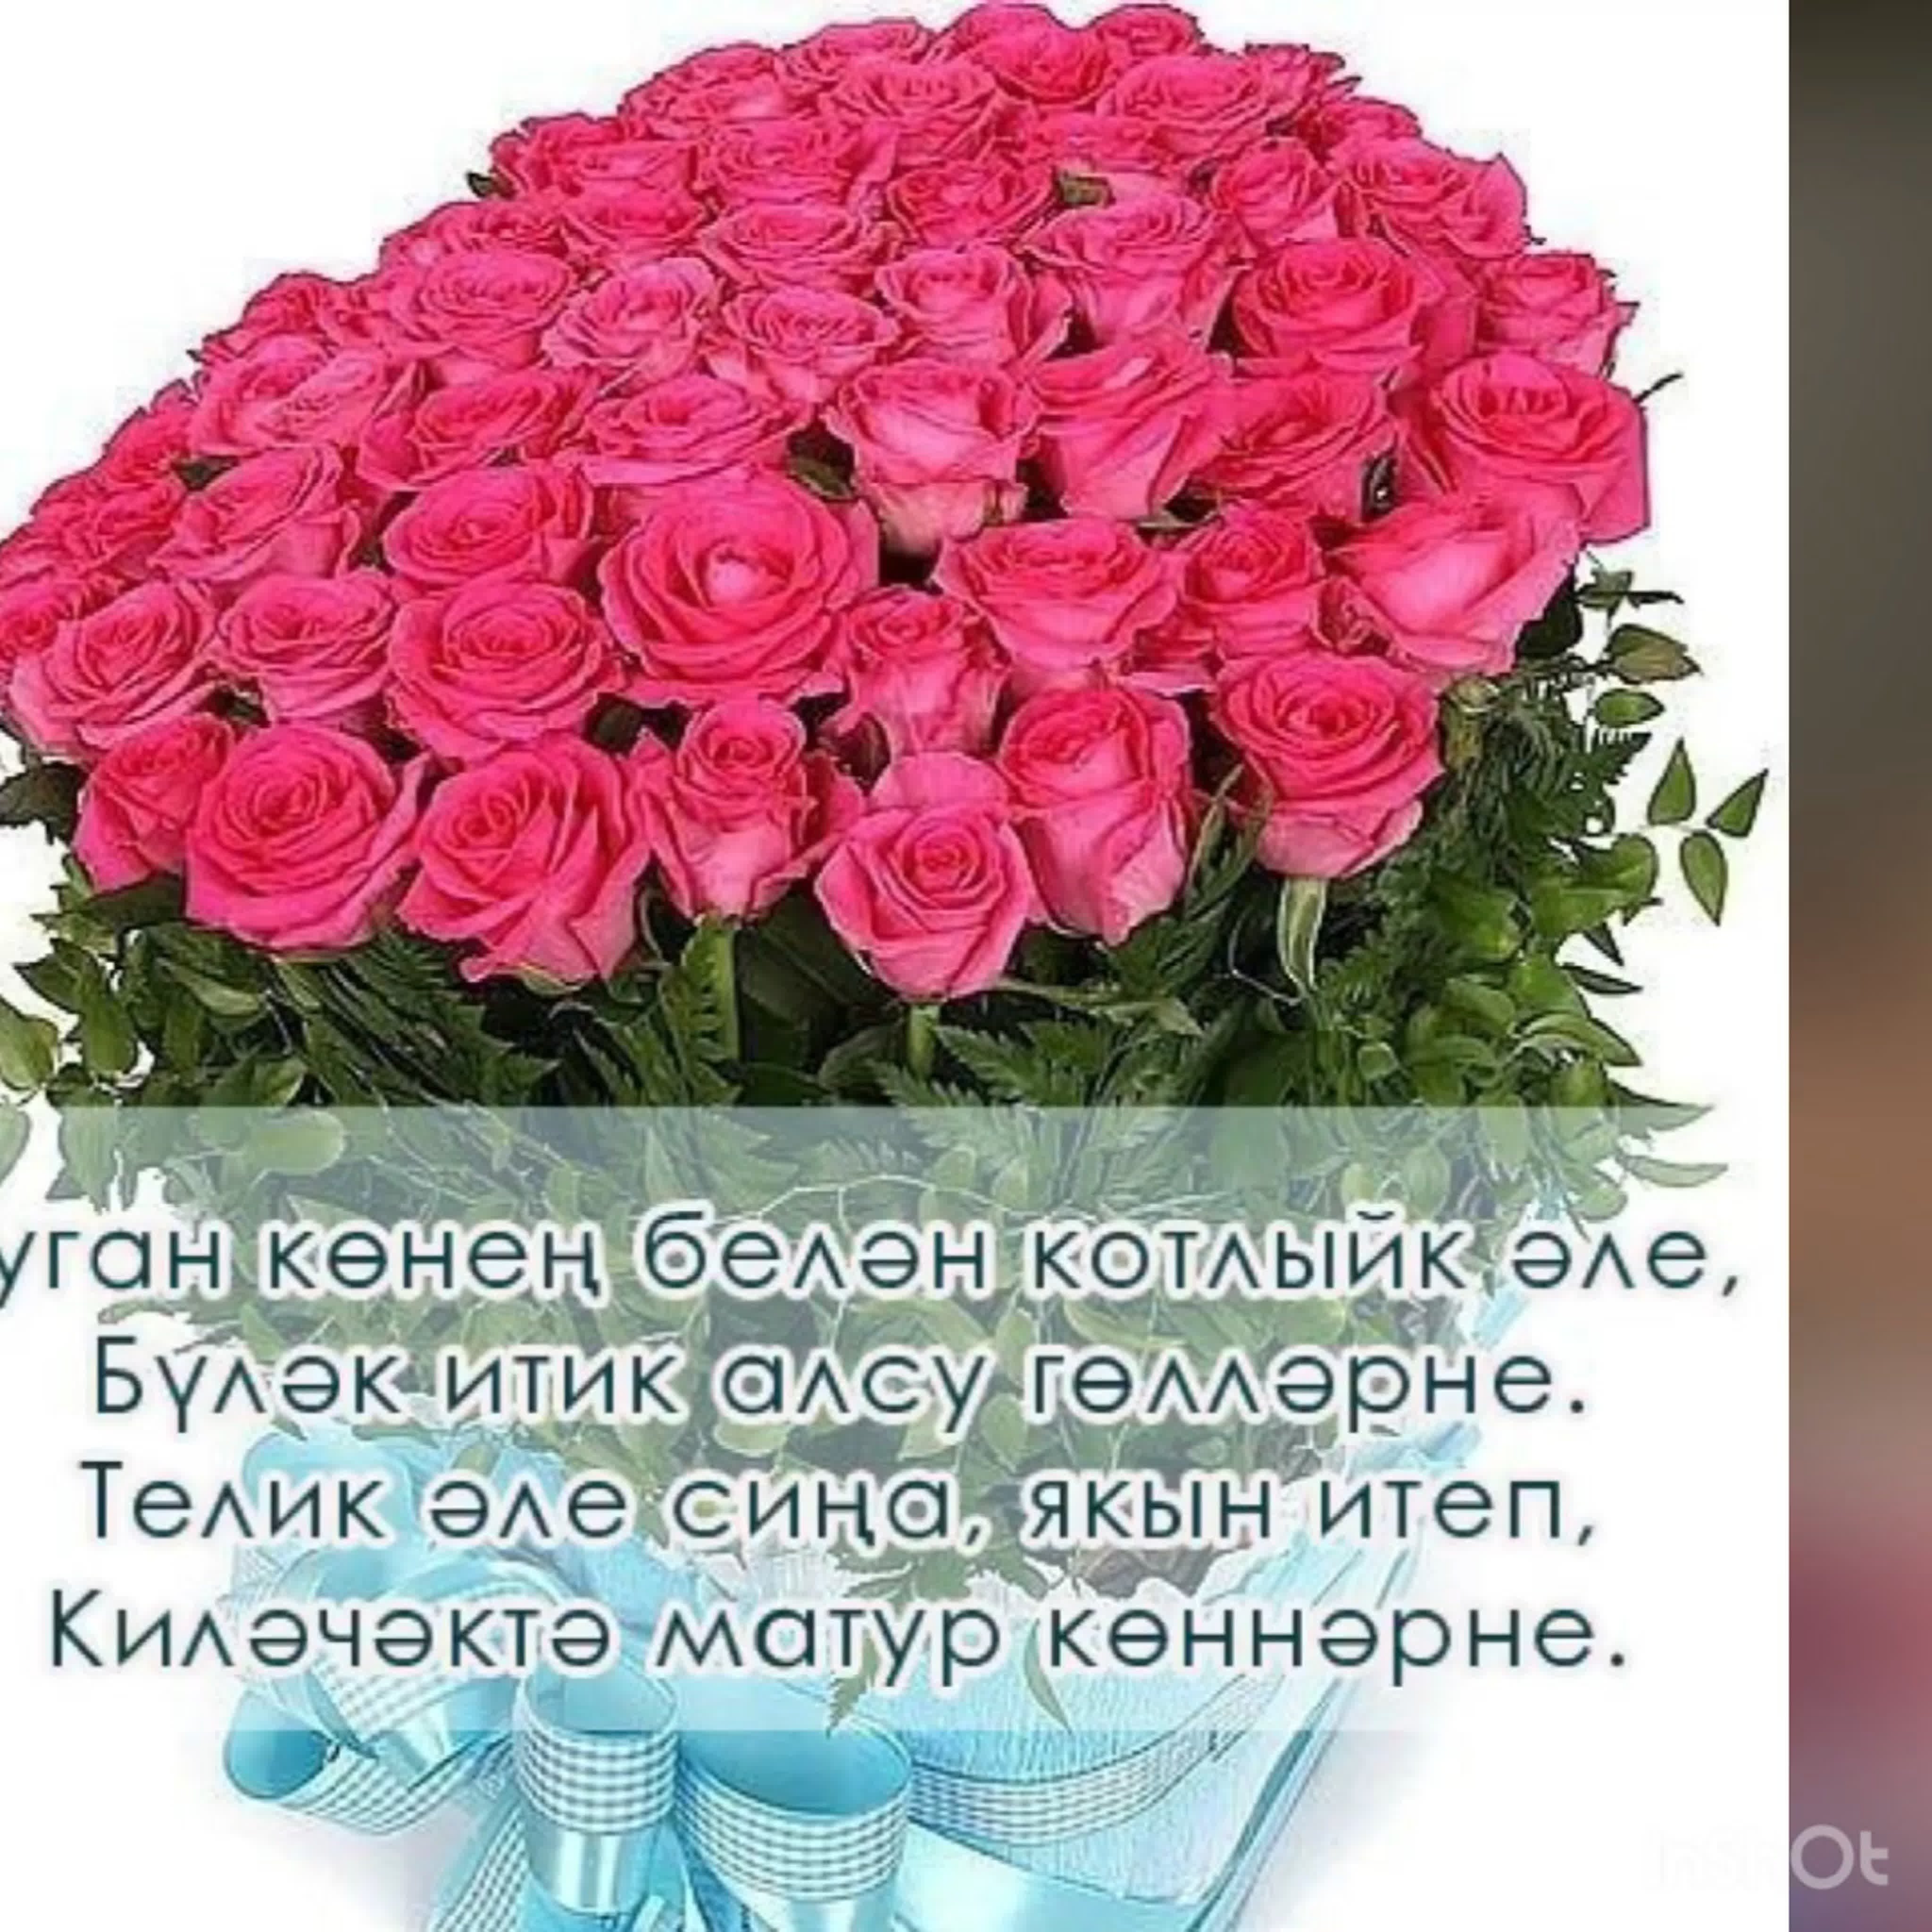 Открытки для женщины на татарском. Поздравления с днём рождения на татарском языке. Поздравления с днём рождения женщине на татарском языке. Поздравления с днём рождения женщине на татарском. Поздравления с днём рождения женщине на татарском я.